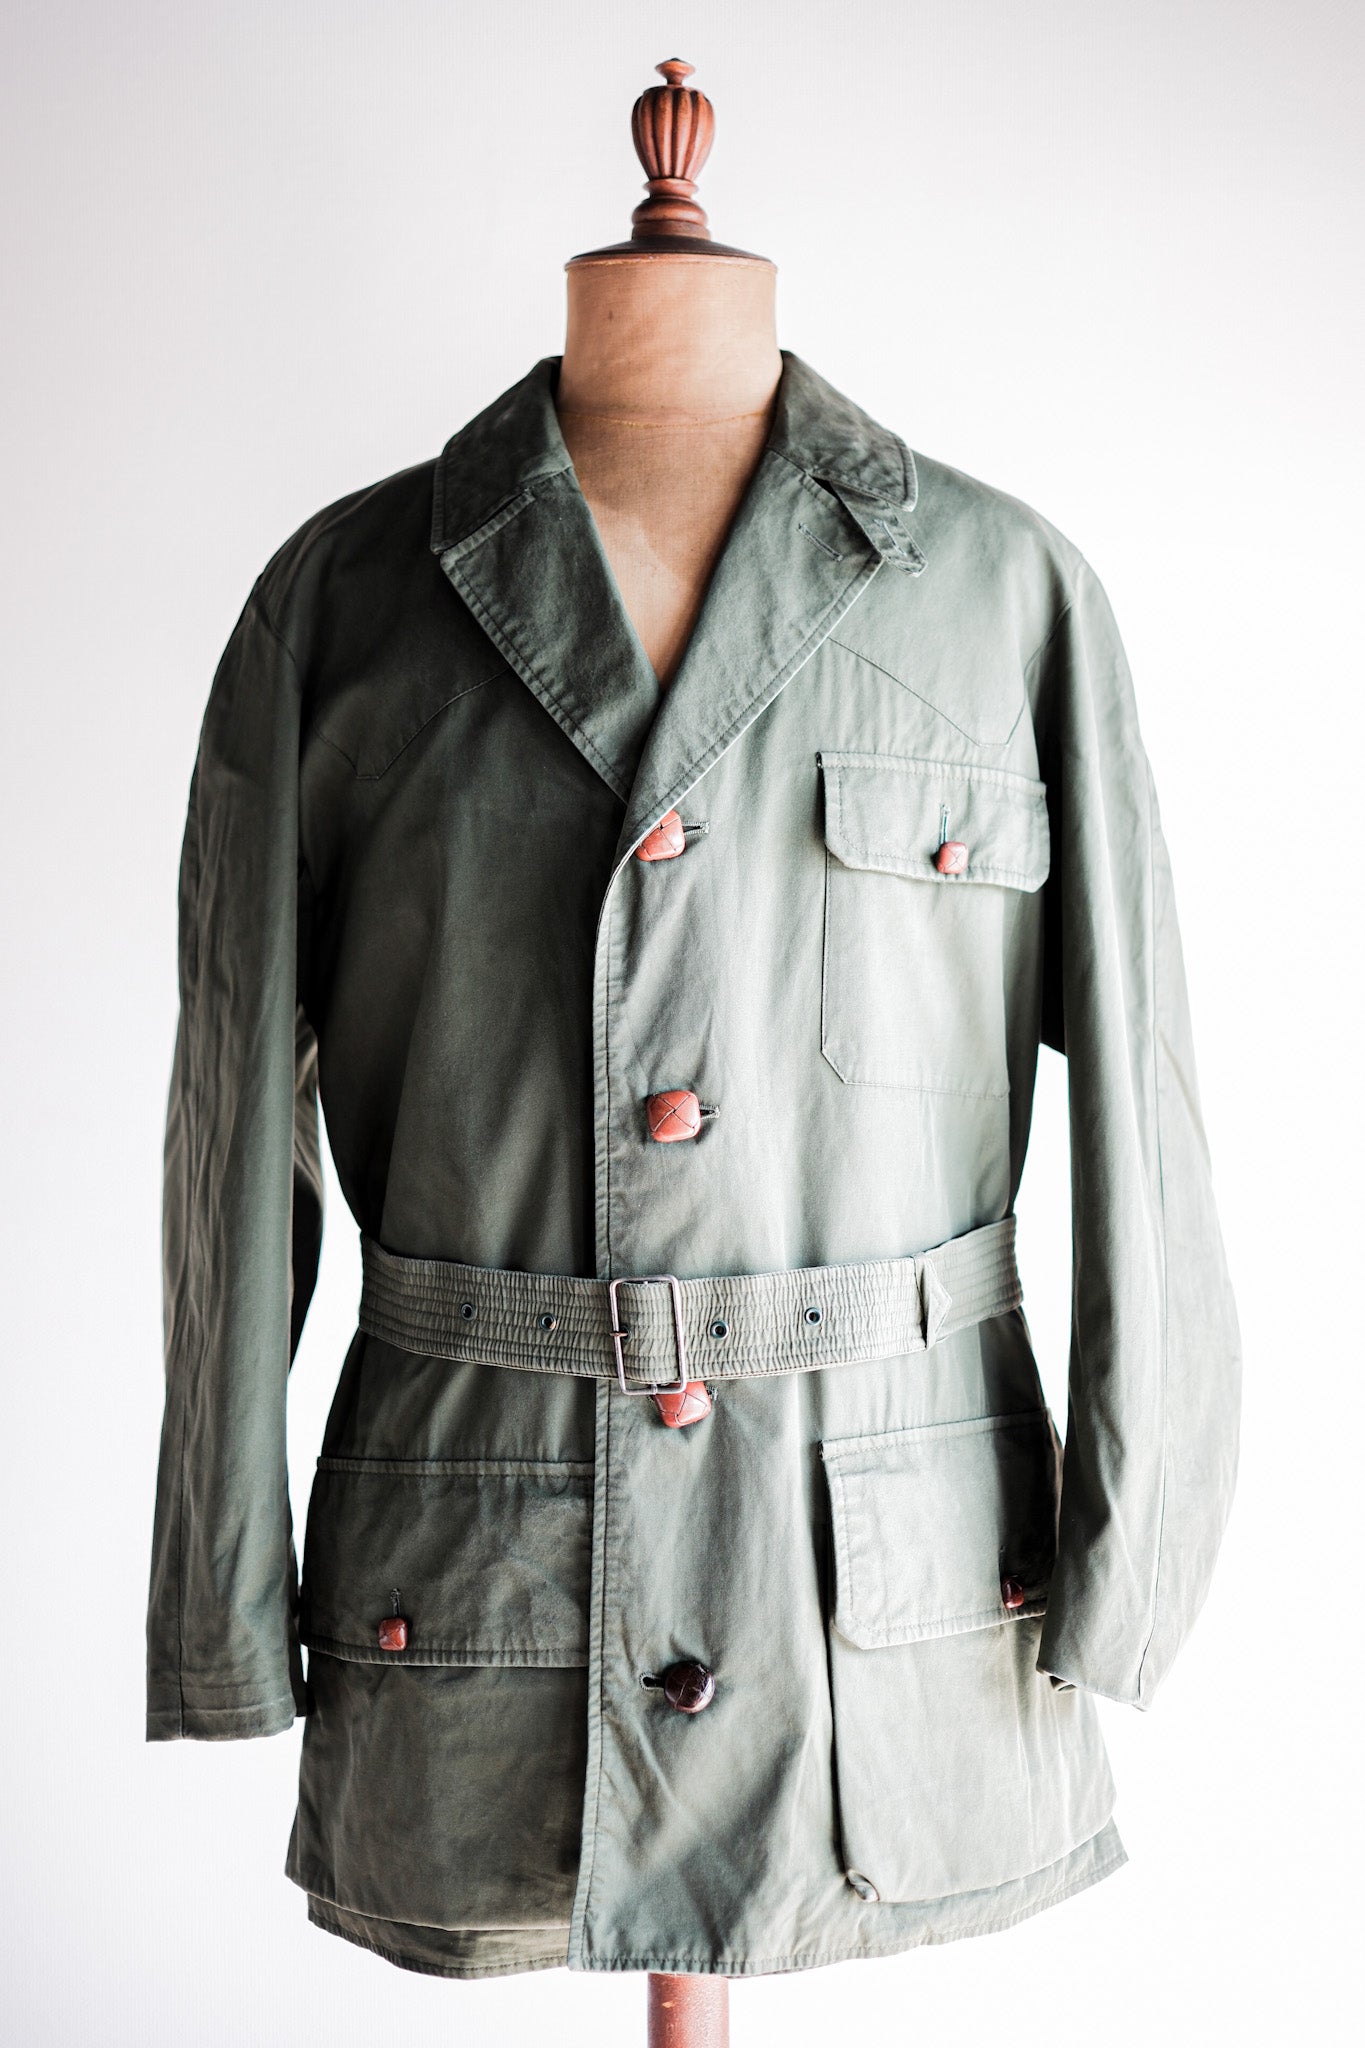 [〜60年代]復古grenfell射手夾克尺寸。42“山地標籤”